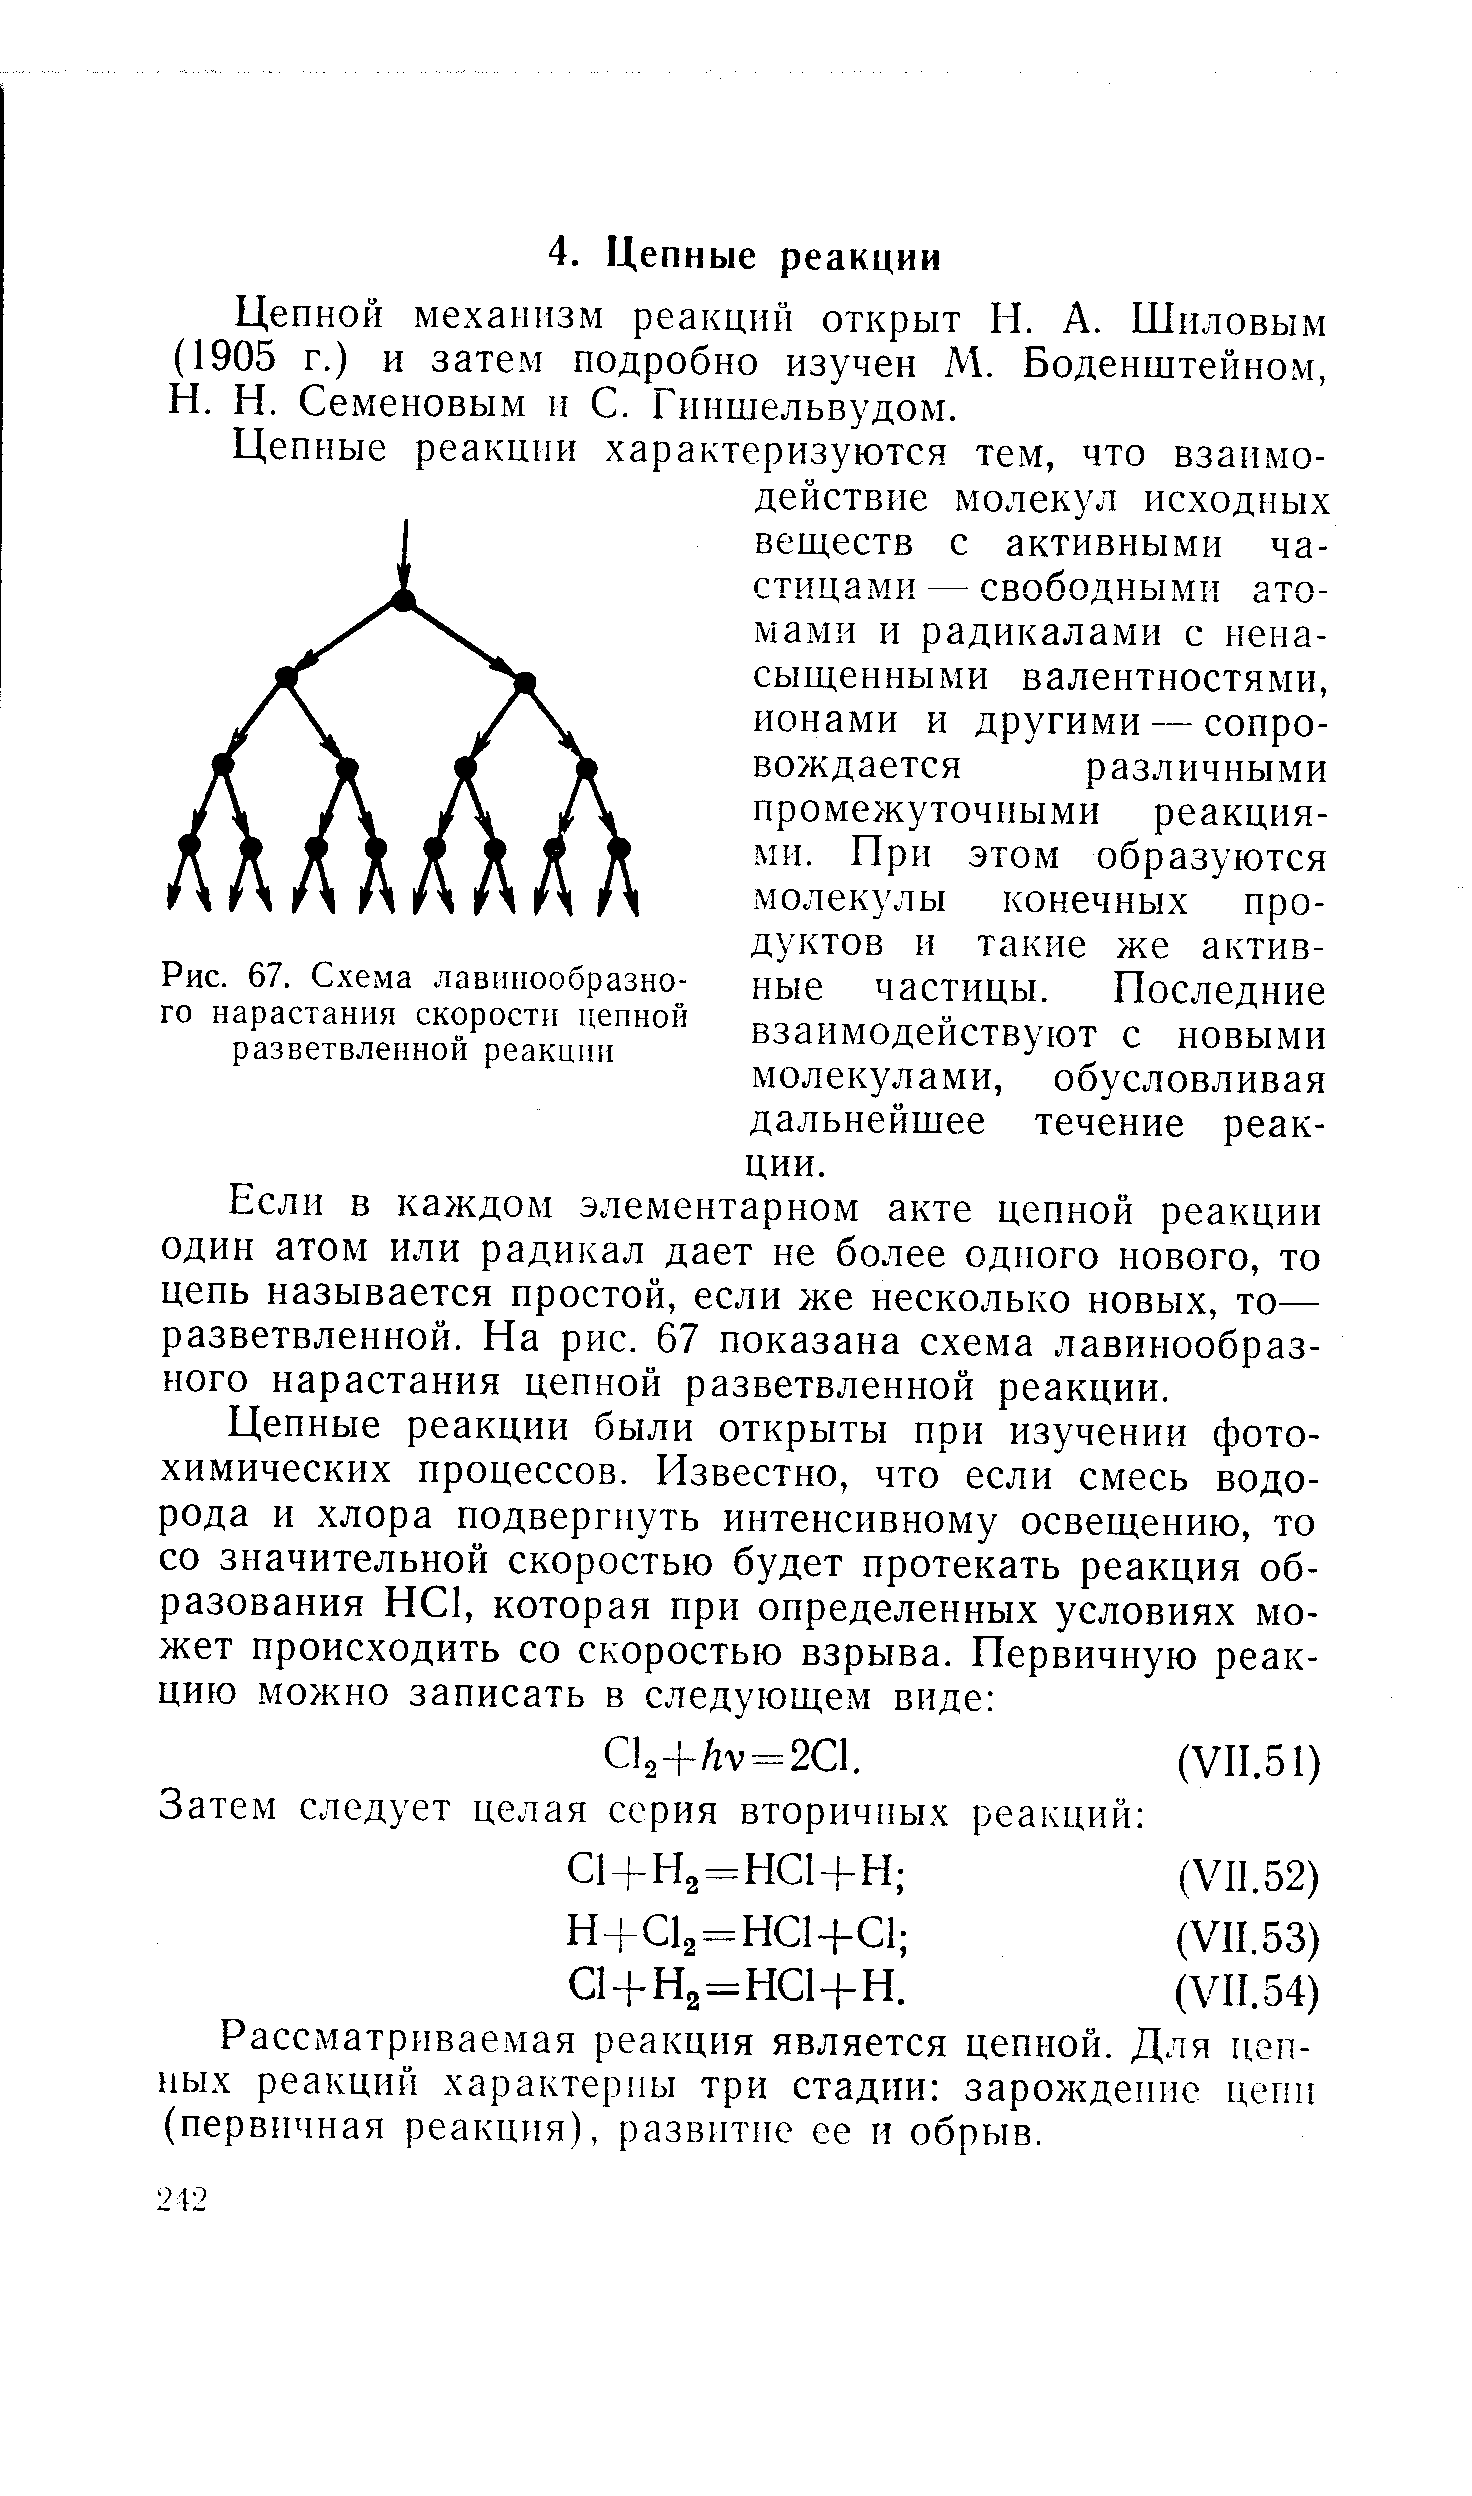 Цепной механизм реакций открыт И. А. Шиловым (1905 г.) и затем подробно изучен М. Боденштейном, Н. Н. Семеновым и С. Гнншельвудом.